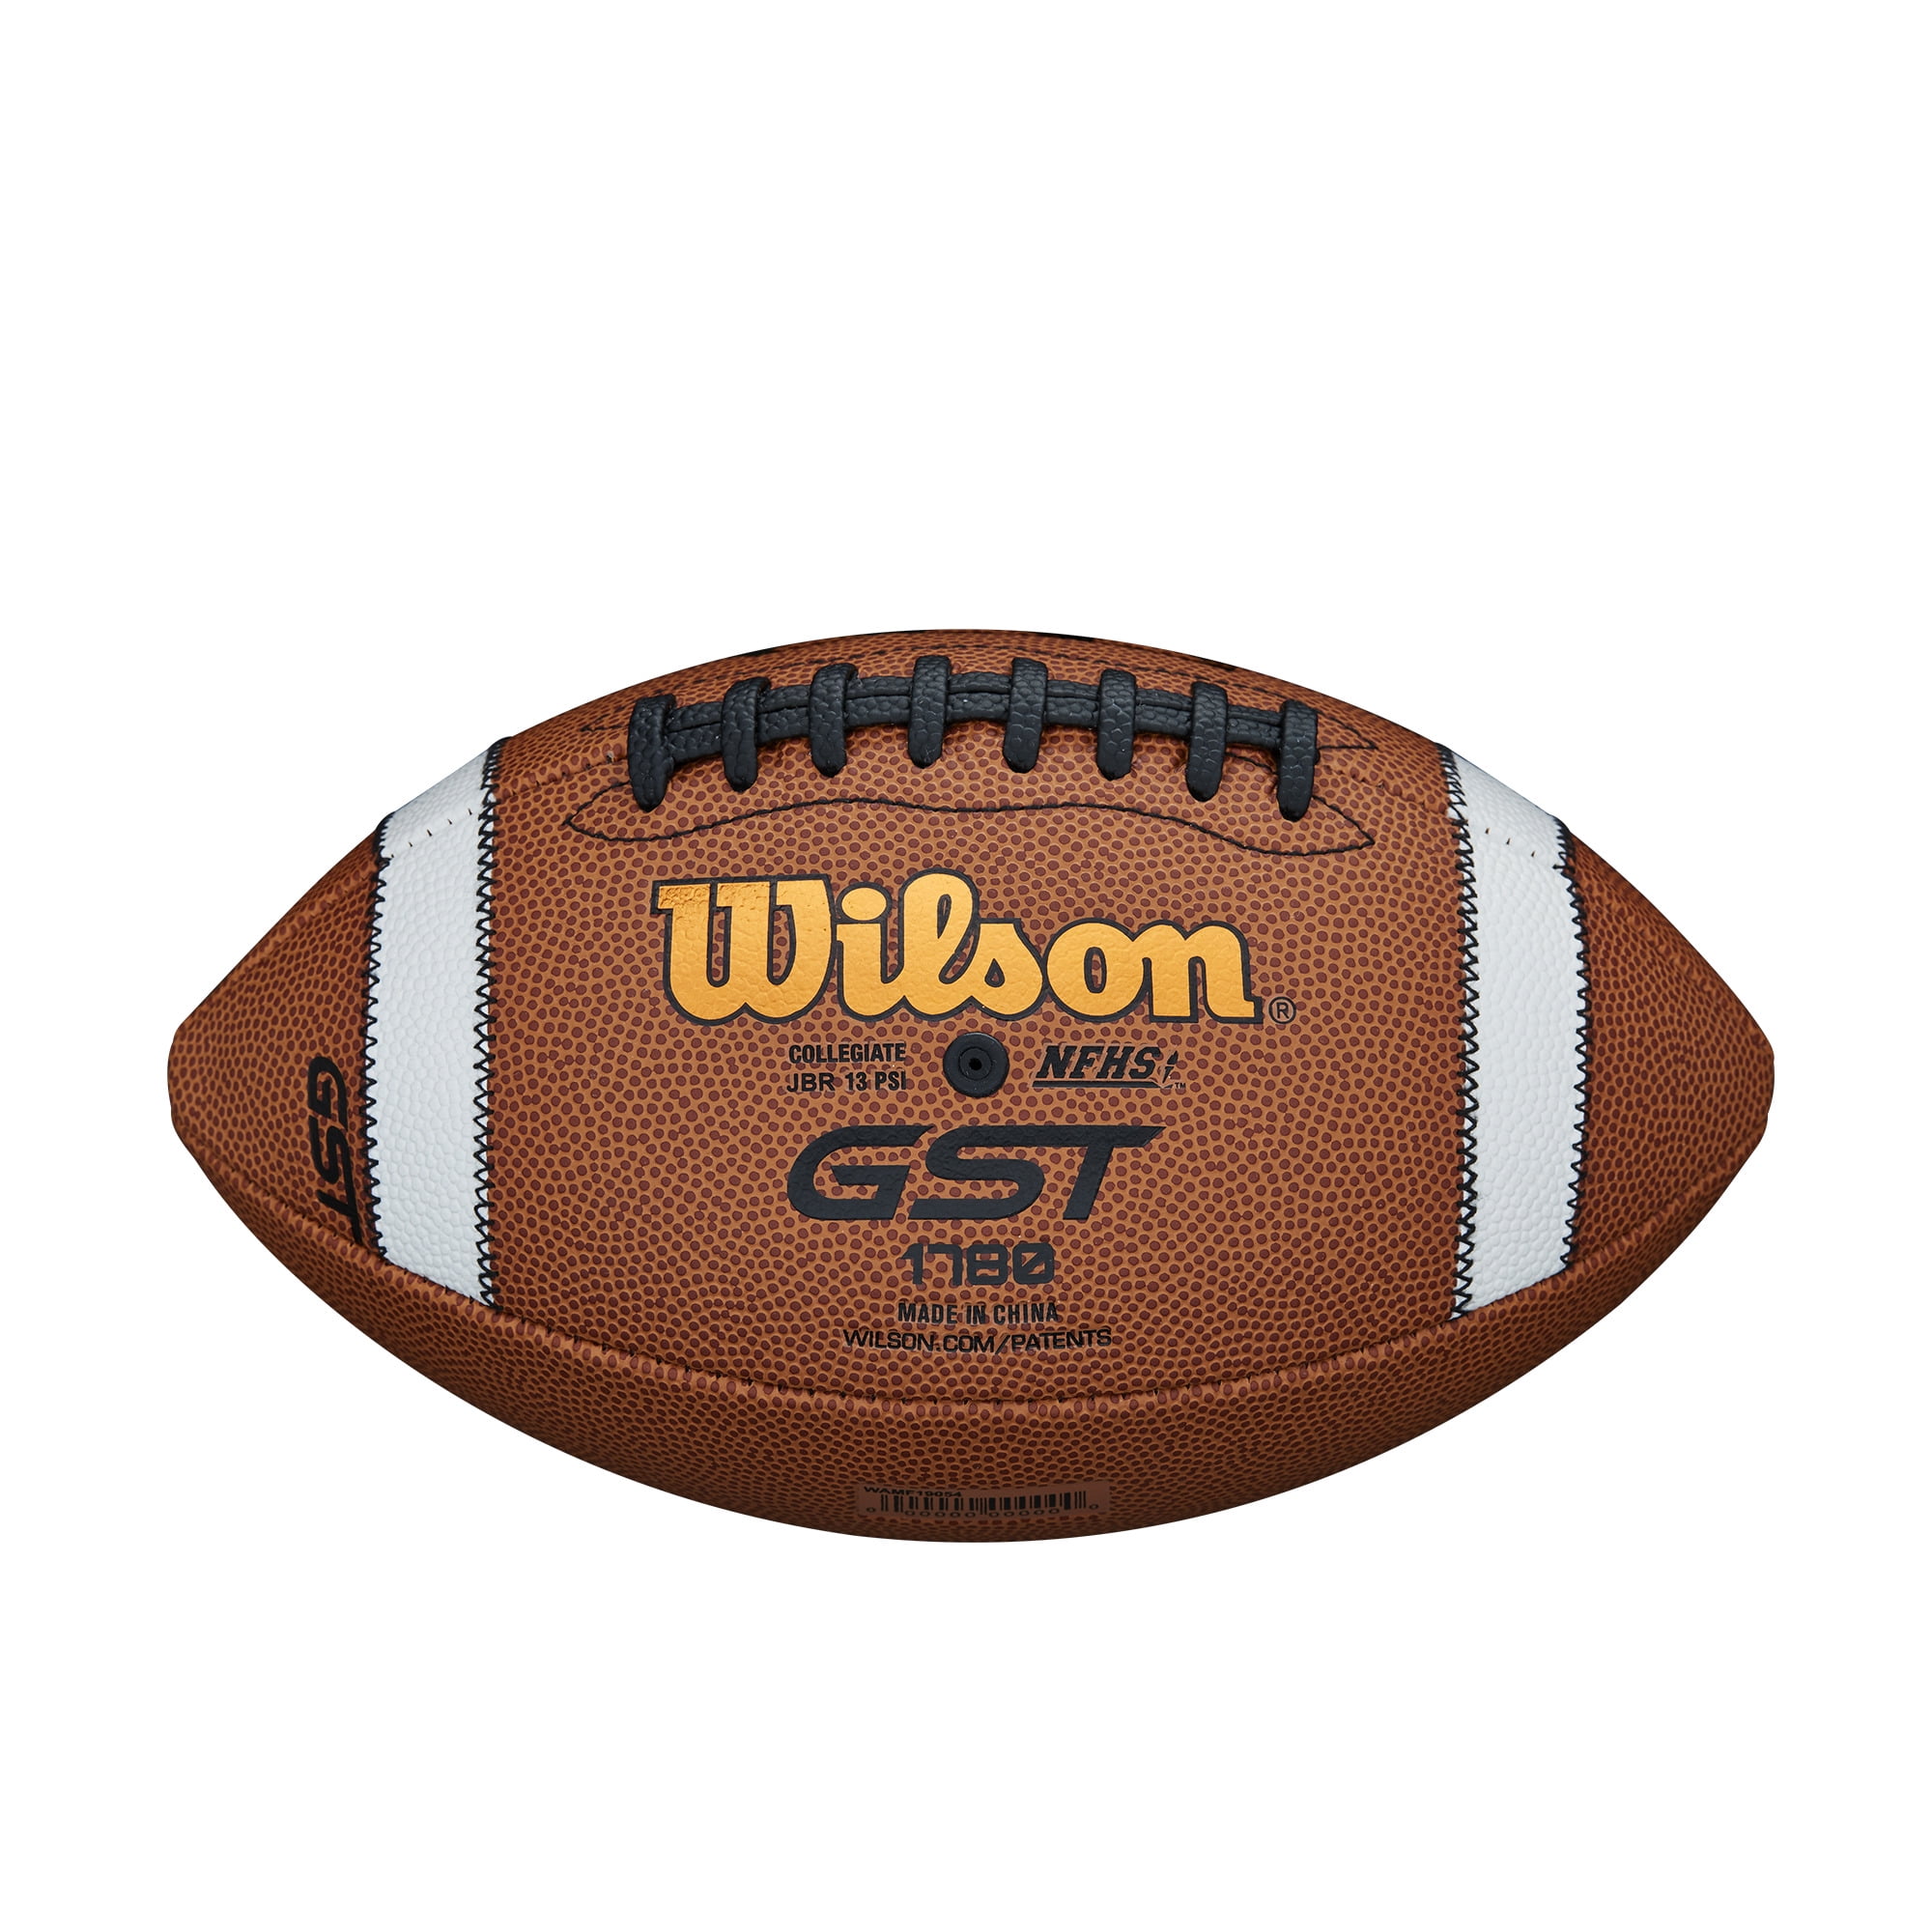 Wisconsin Wilson College Composite Football